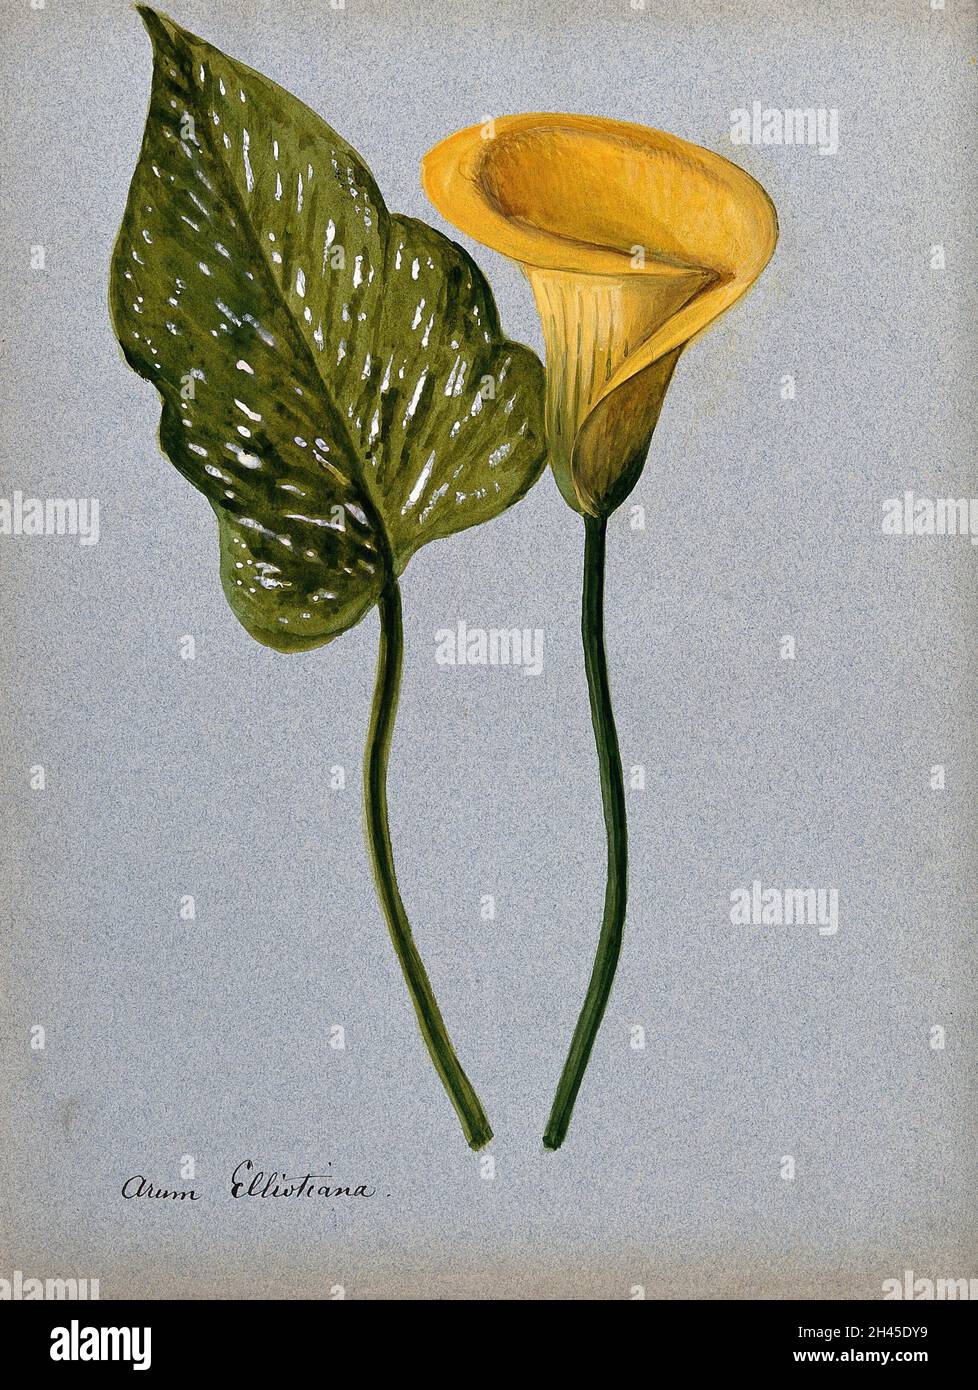 Lys d'arum jaune (Zantedeschia elliottiana) : inflorescence et feuilles.Aquarelle  Photo Stock - Alamy